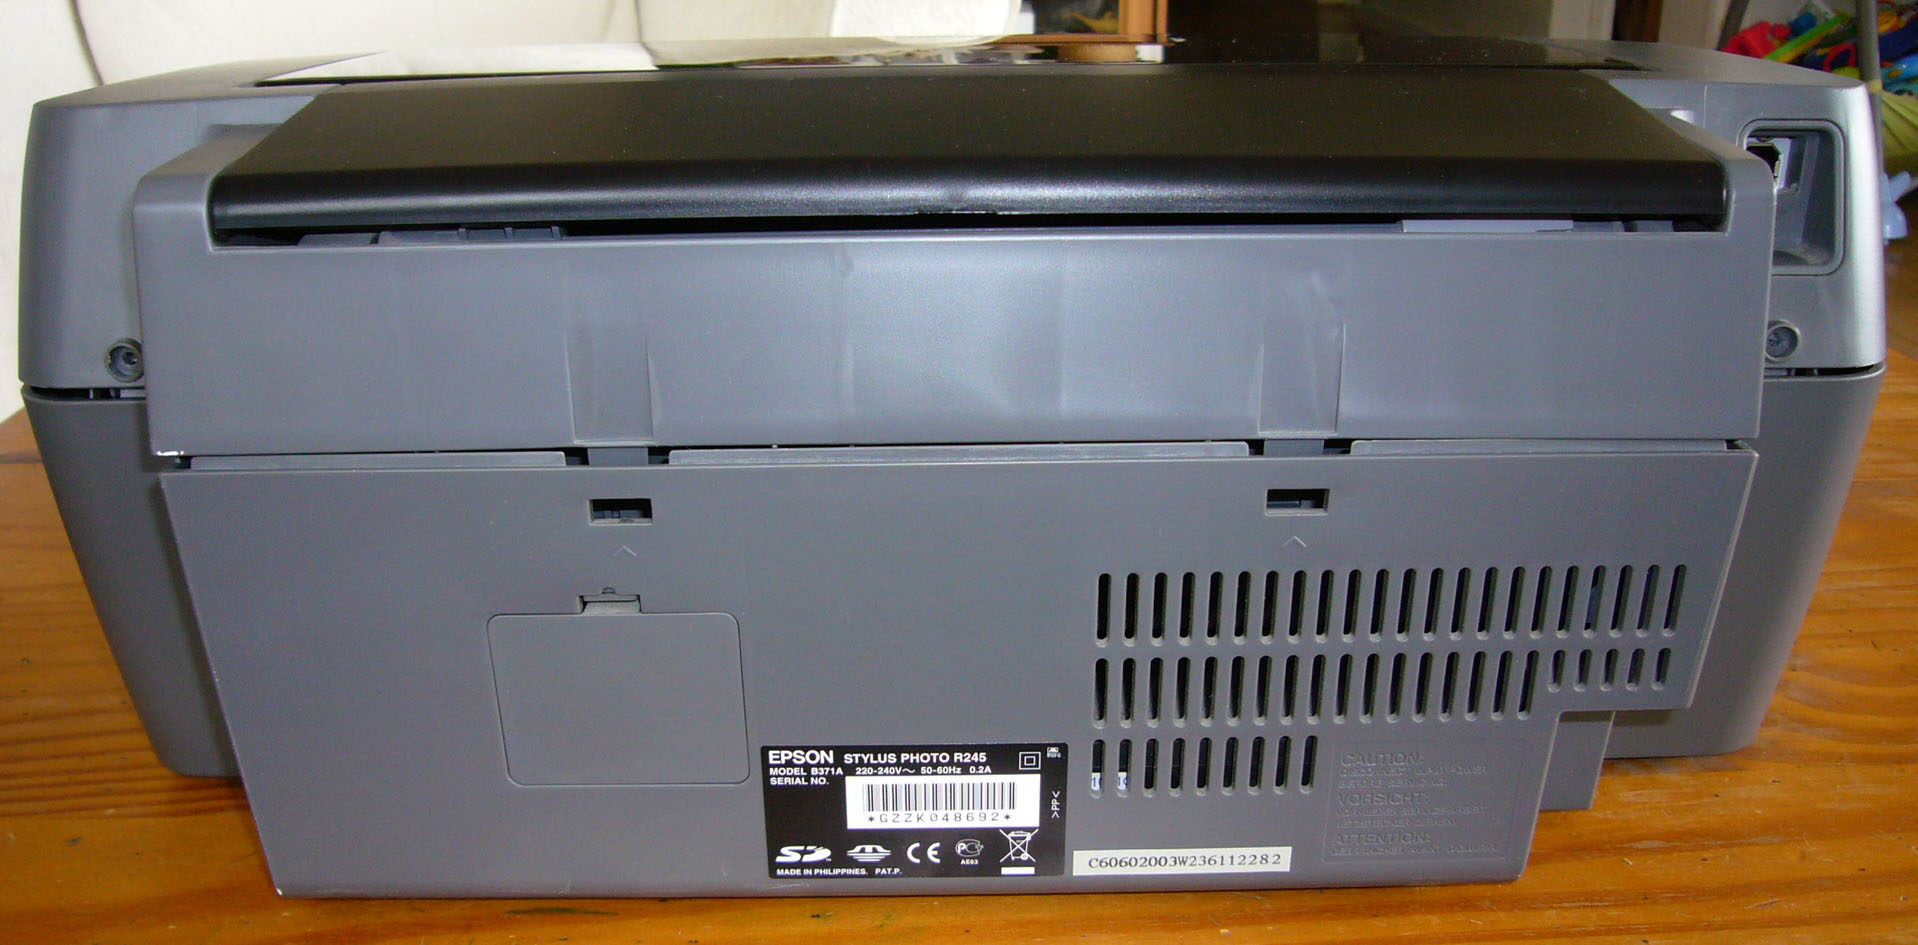 SubAudio - Nettoyage d'une imprimante Epson R245 - Tête d'impression et  chariot laissent des traces noire.